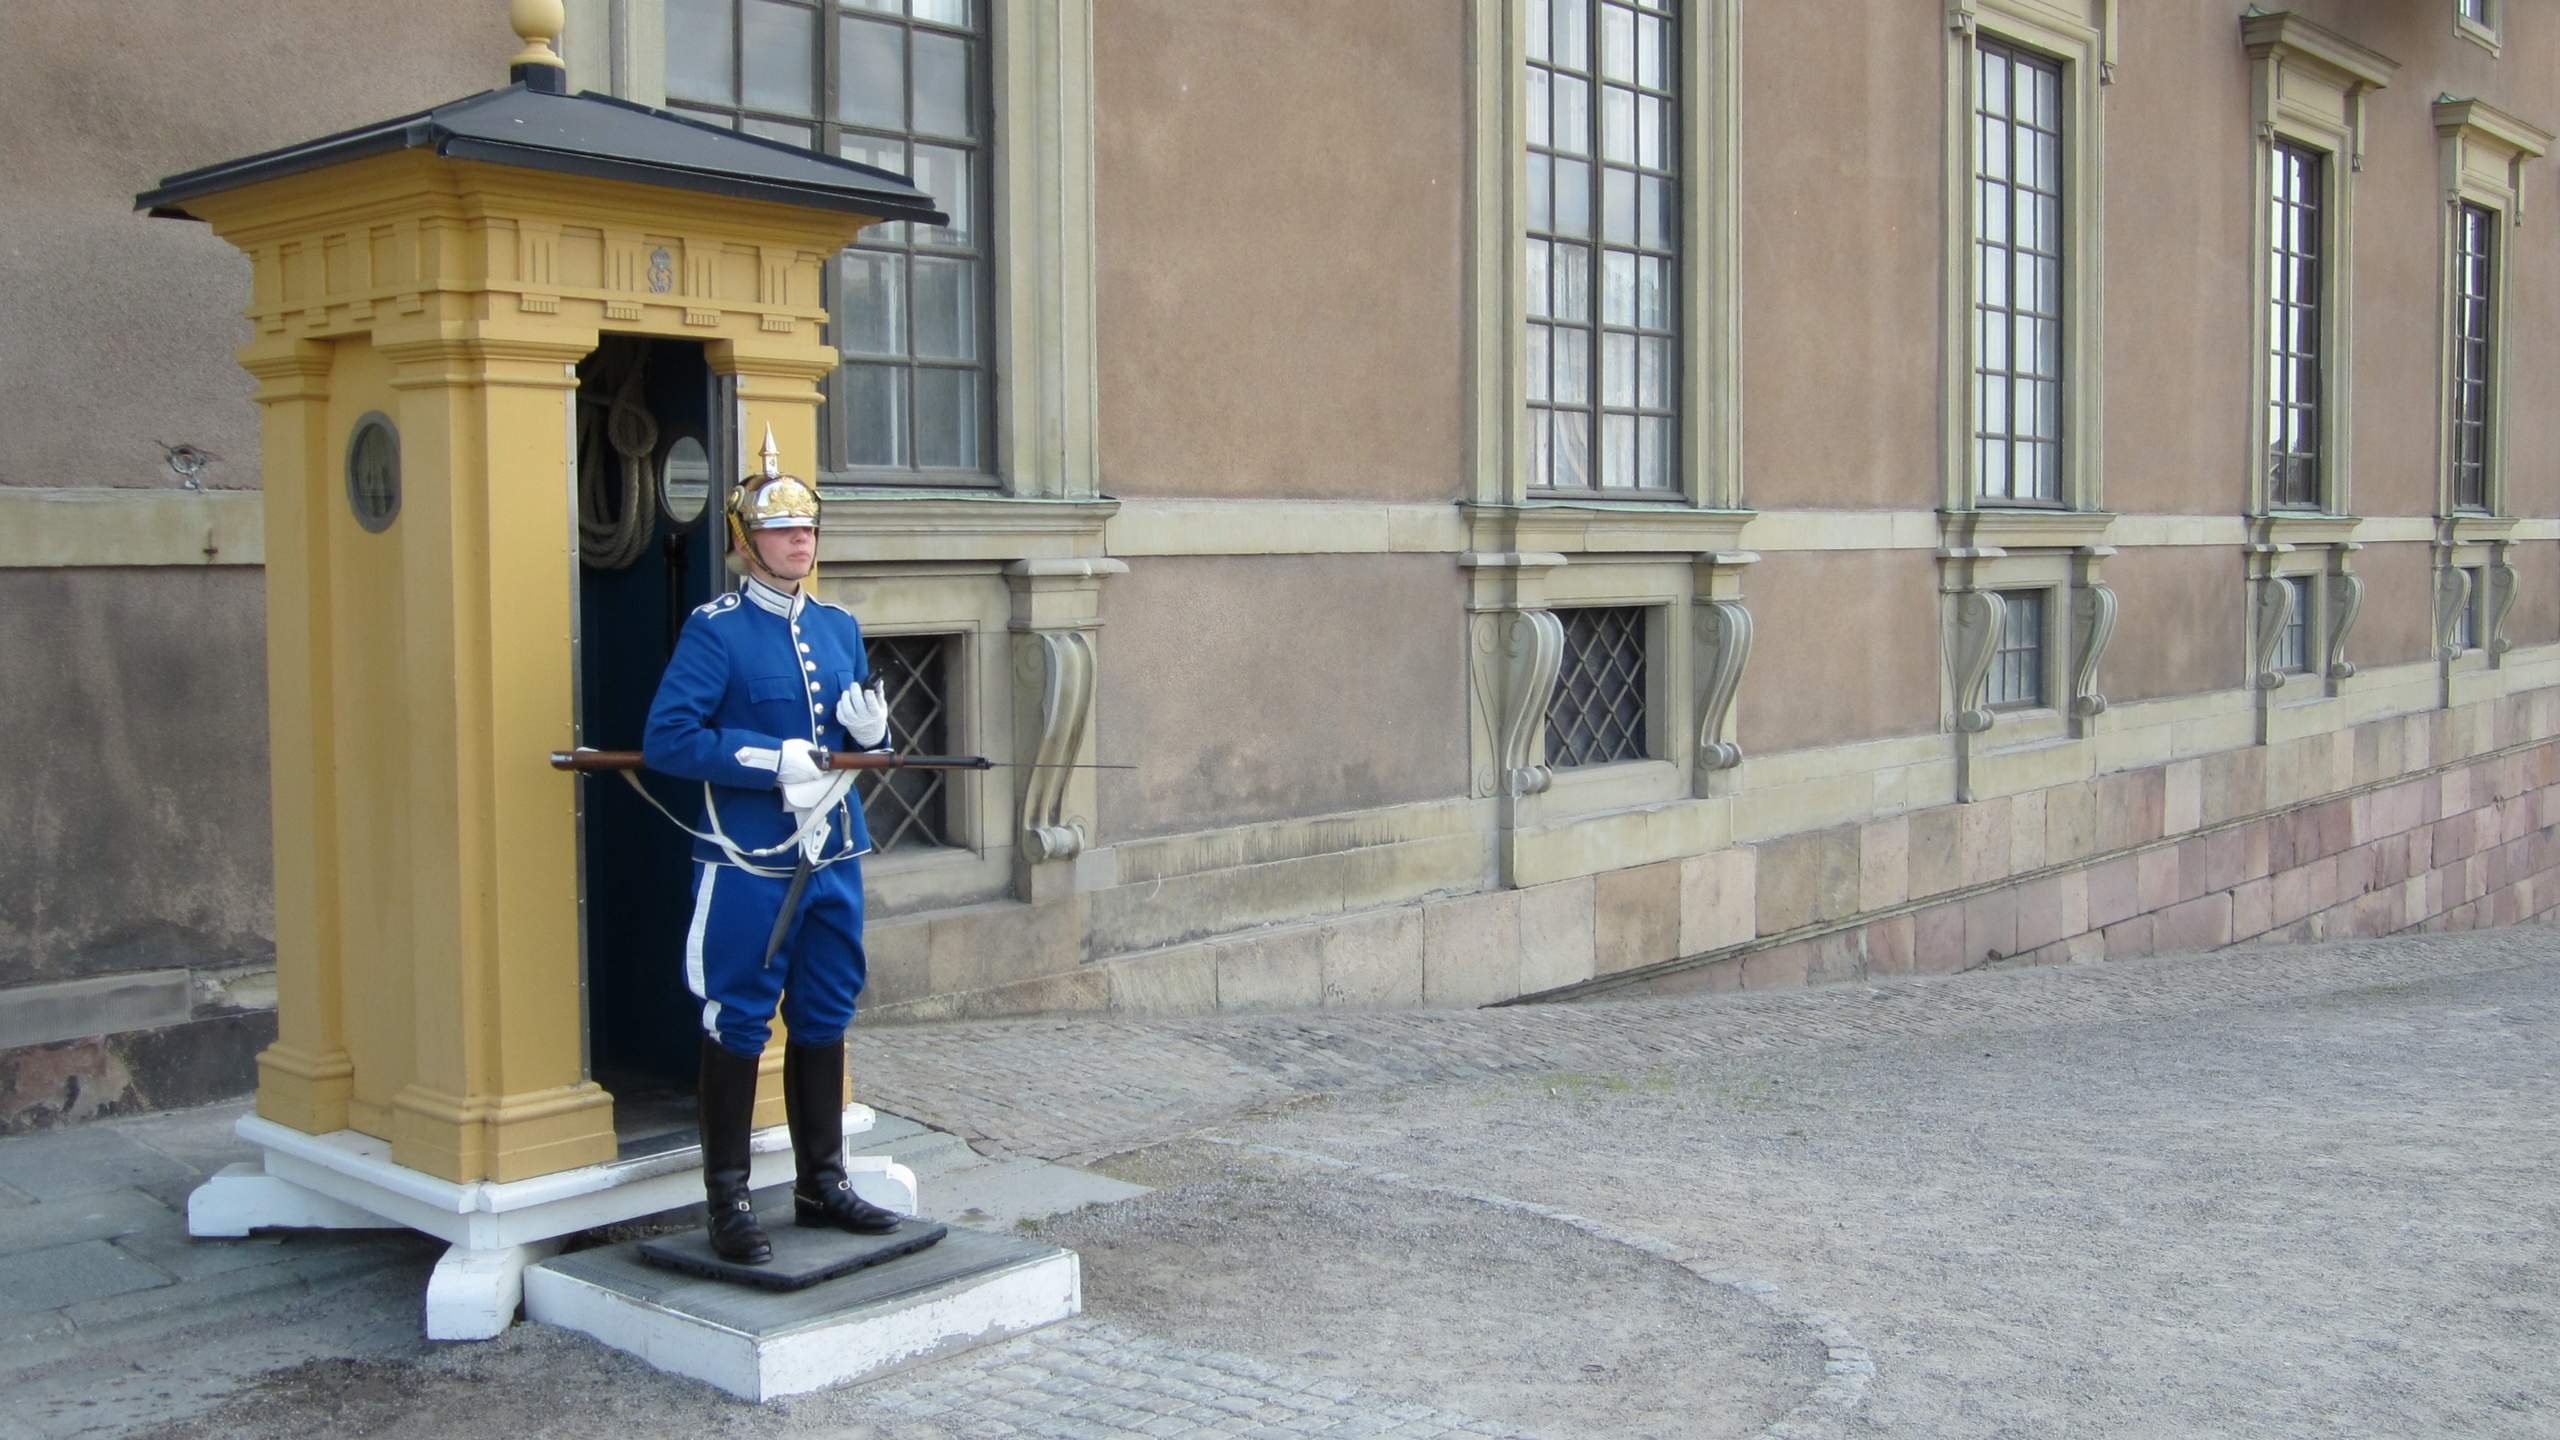 Guardsman at the Royal Palace in Stockholm.